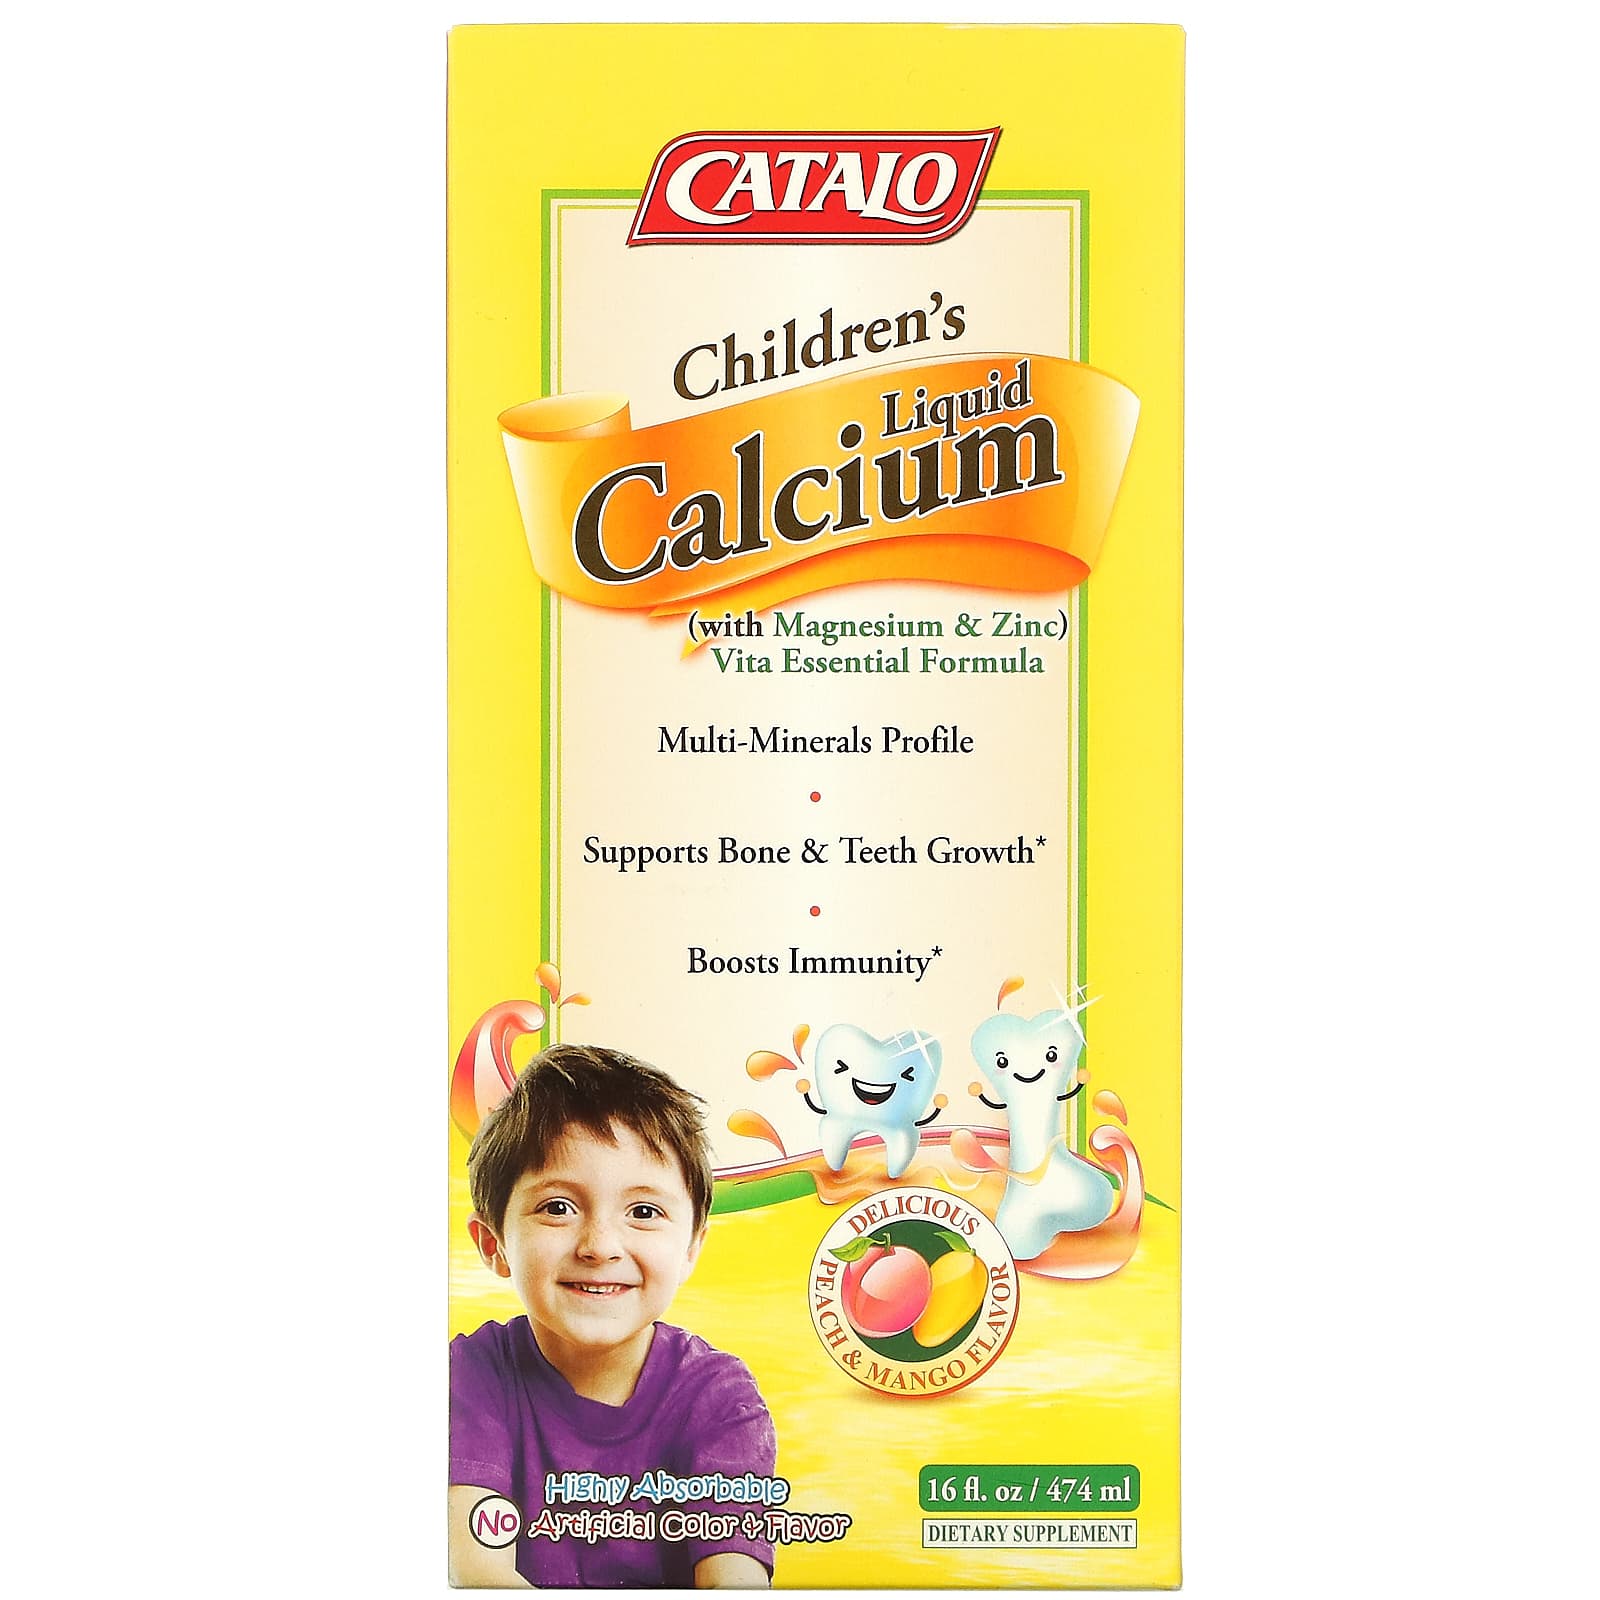 Жидкий Кальций Catalo Naturals для детей с магнием и цинком, персик и манго, 16 жидких унций